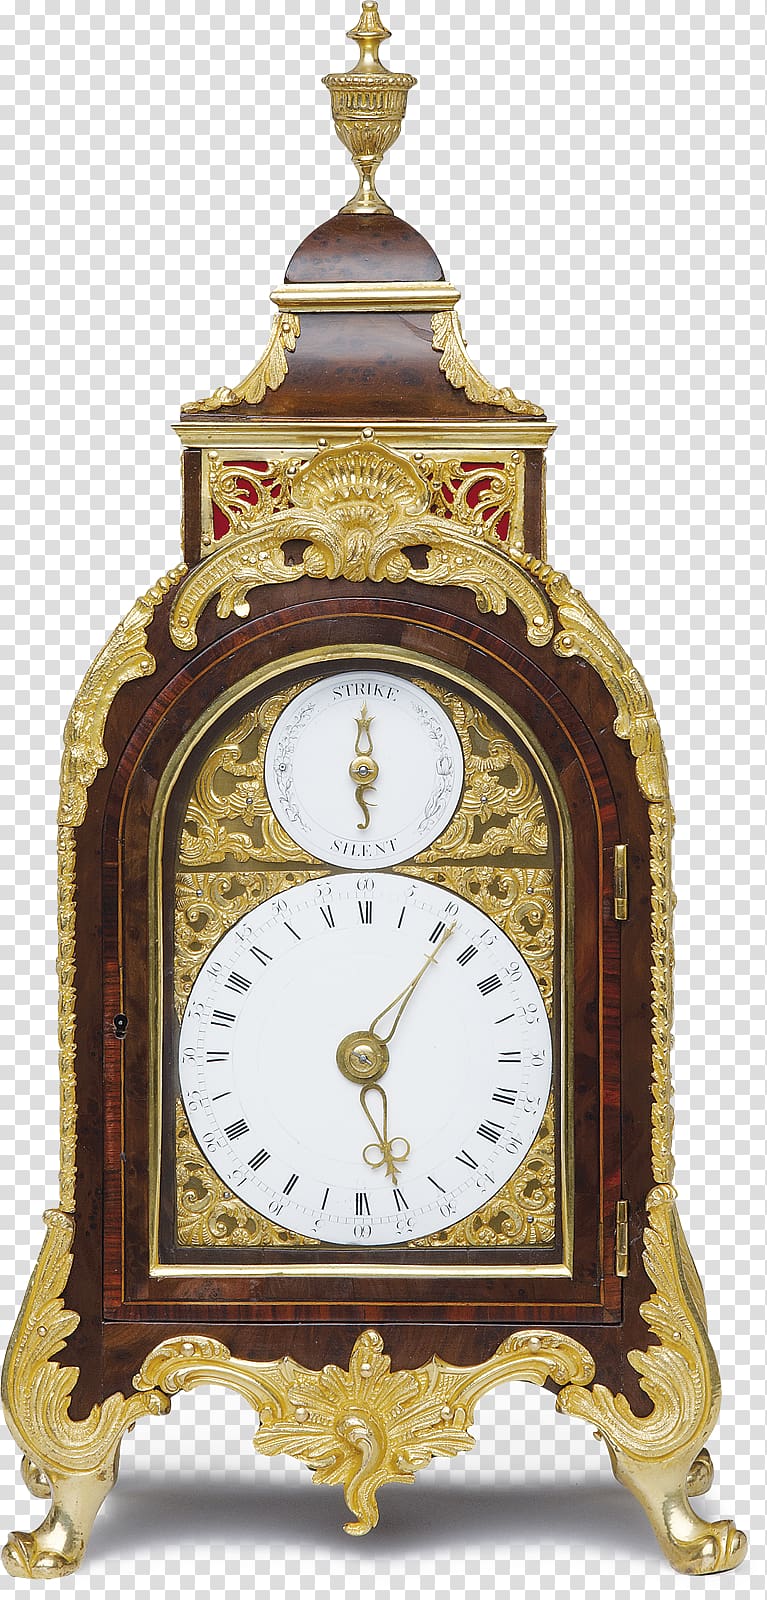 01504 Antique Clock, vintage clock transparent background PNG clipart